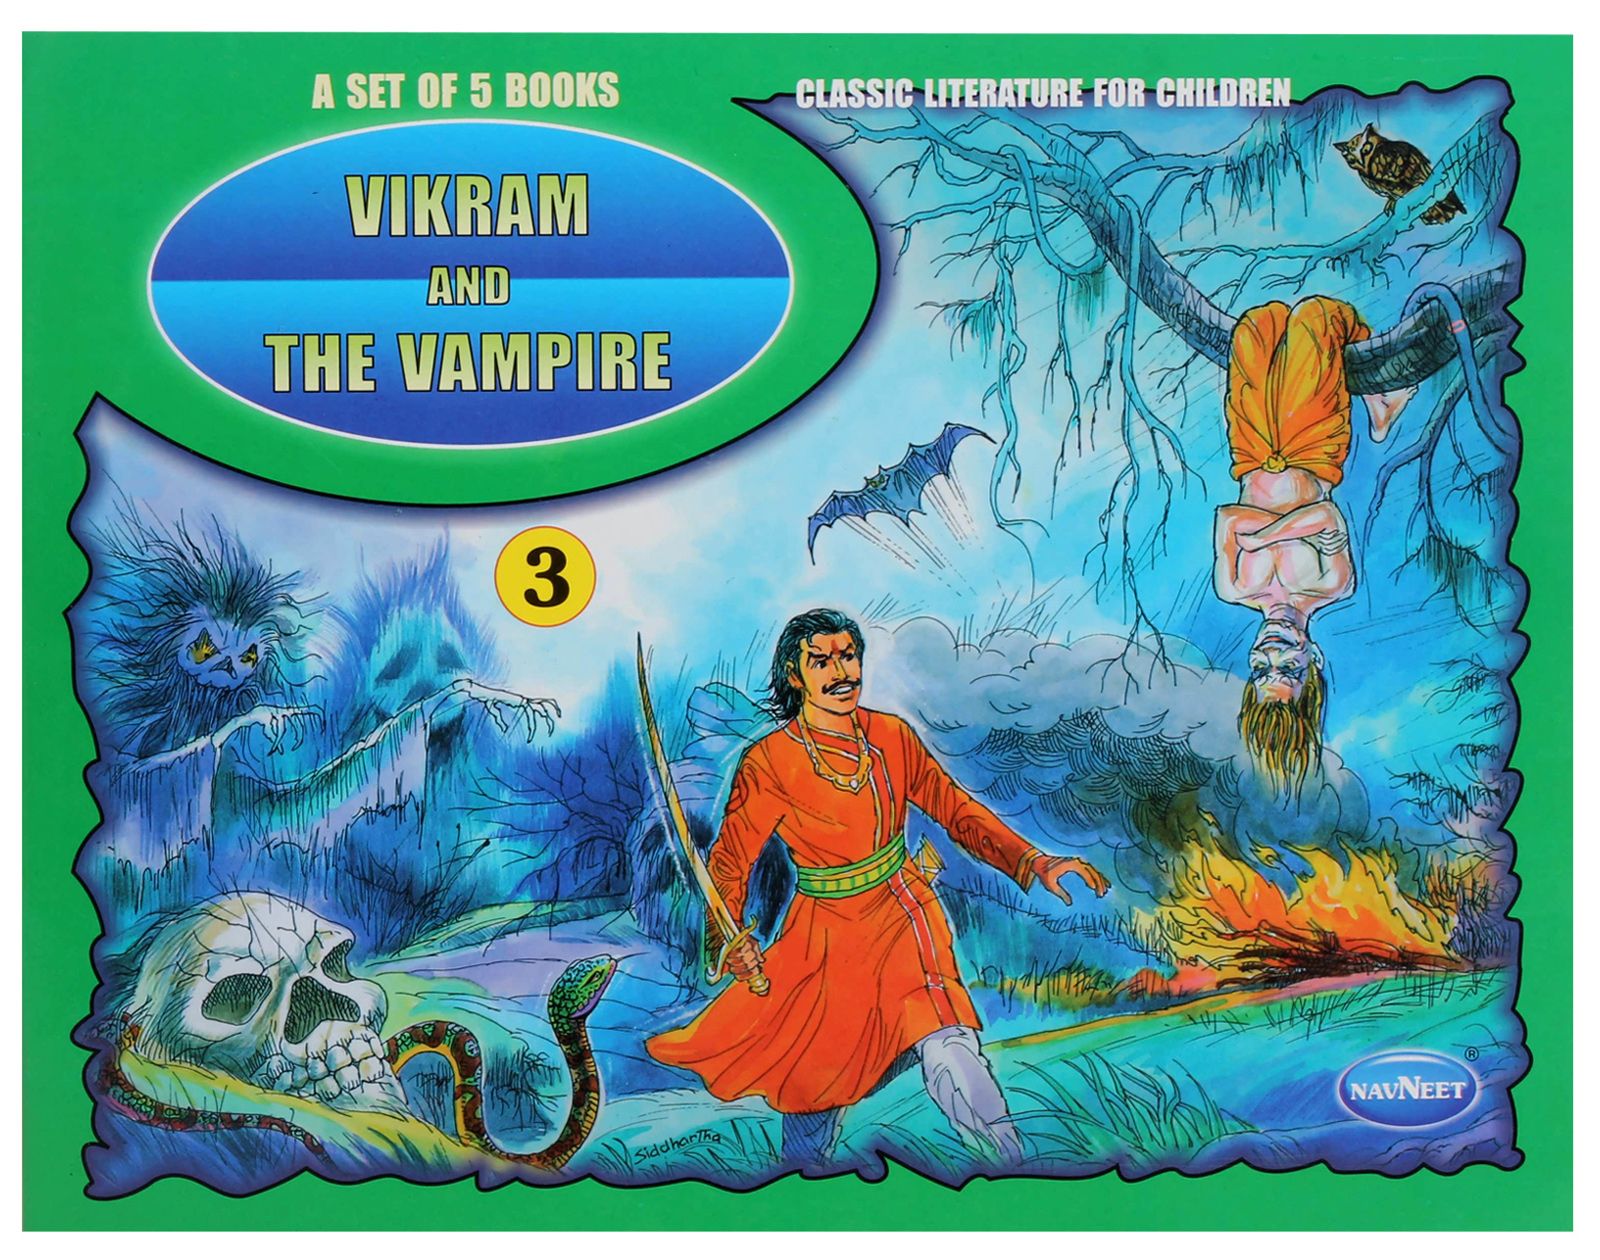 Vikram and The Vampire